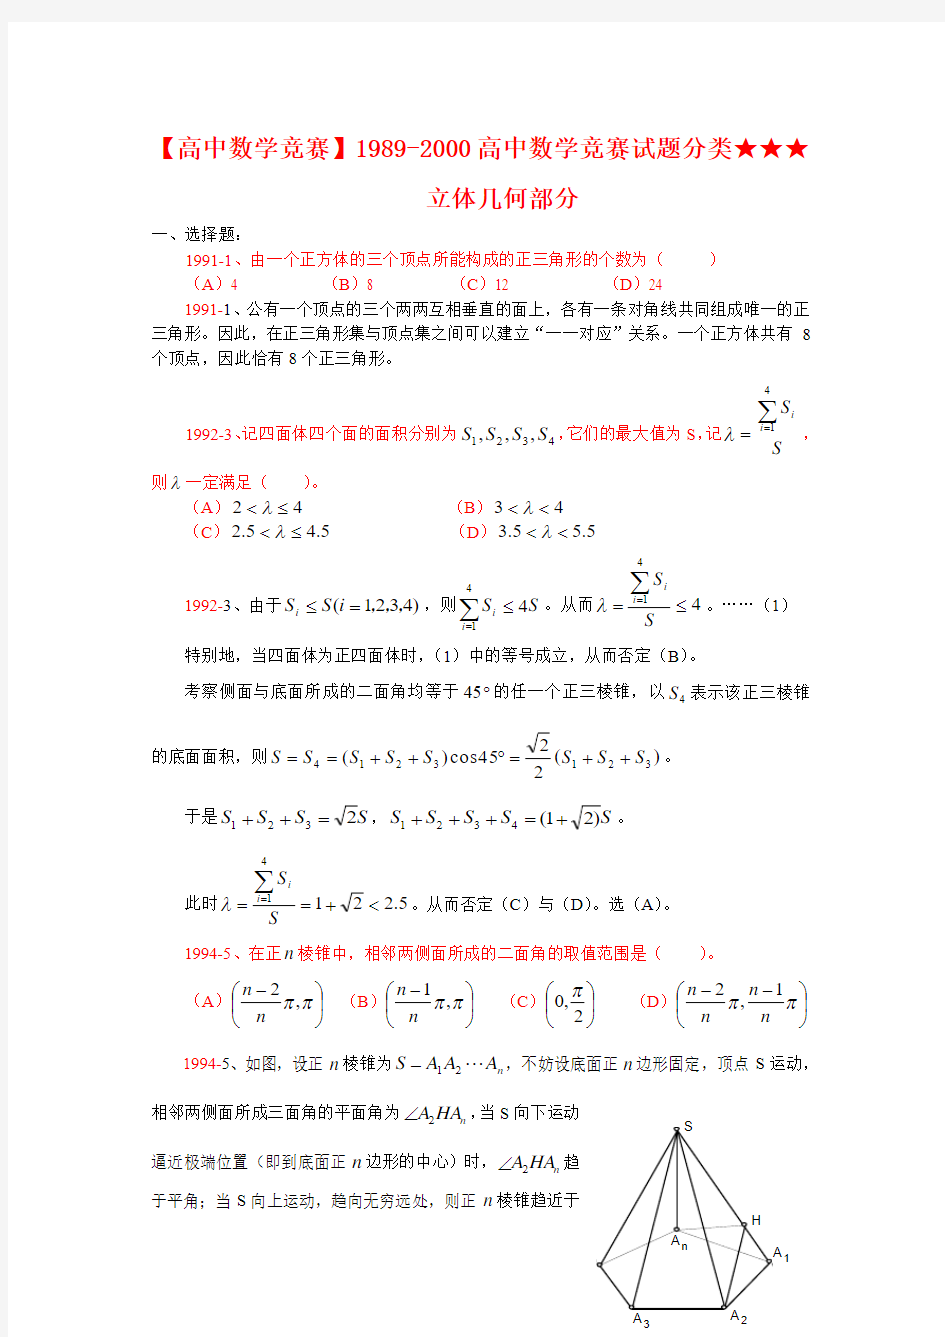 【高中数学竞赛】1989-2000高中数学竞赛试题分类★★★立体几何部分解答